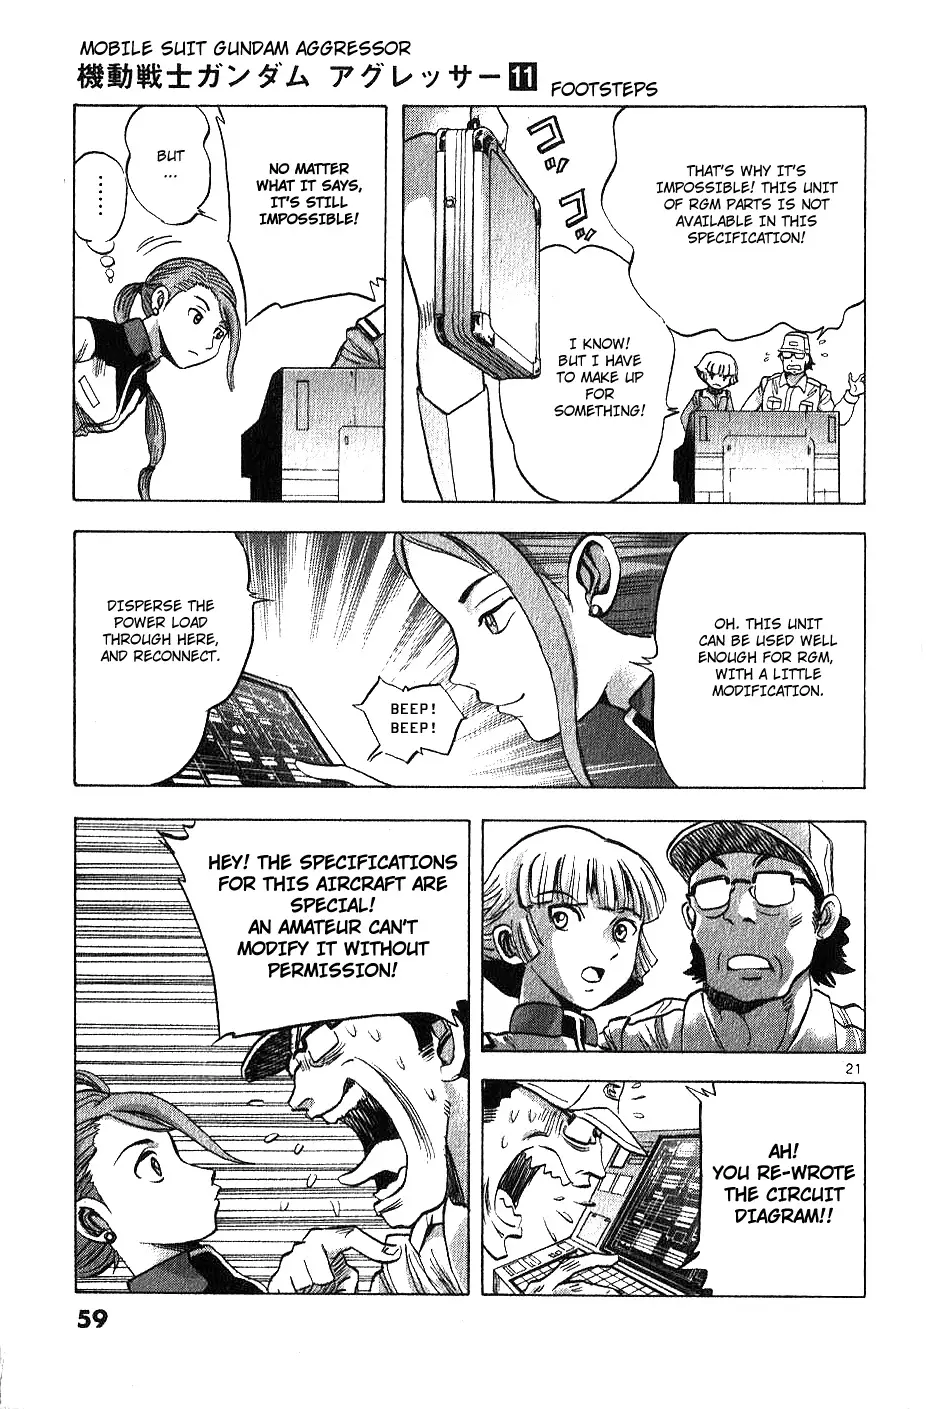 Mobile Suit Gundam Aggressor - 51 page 20-6aae6bcb